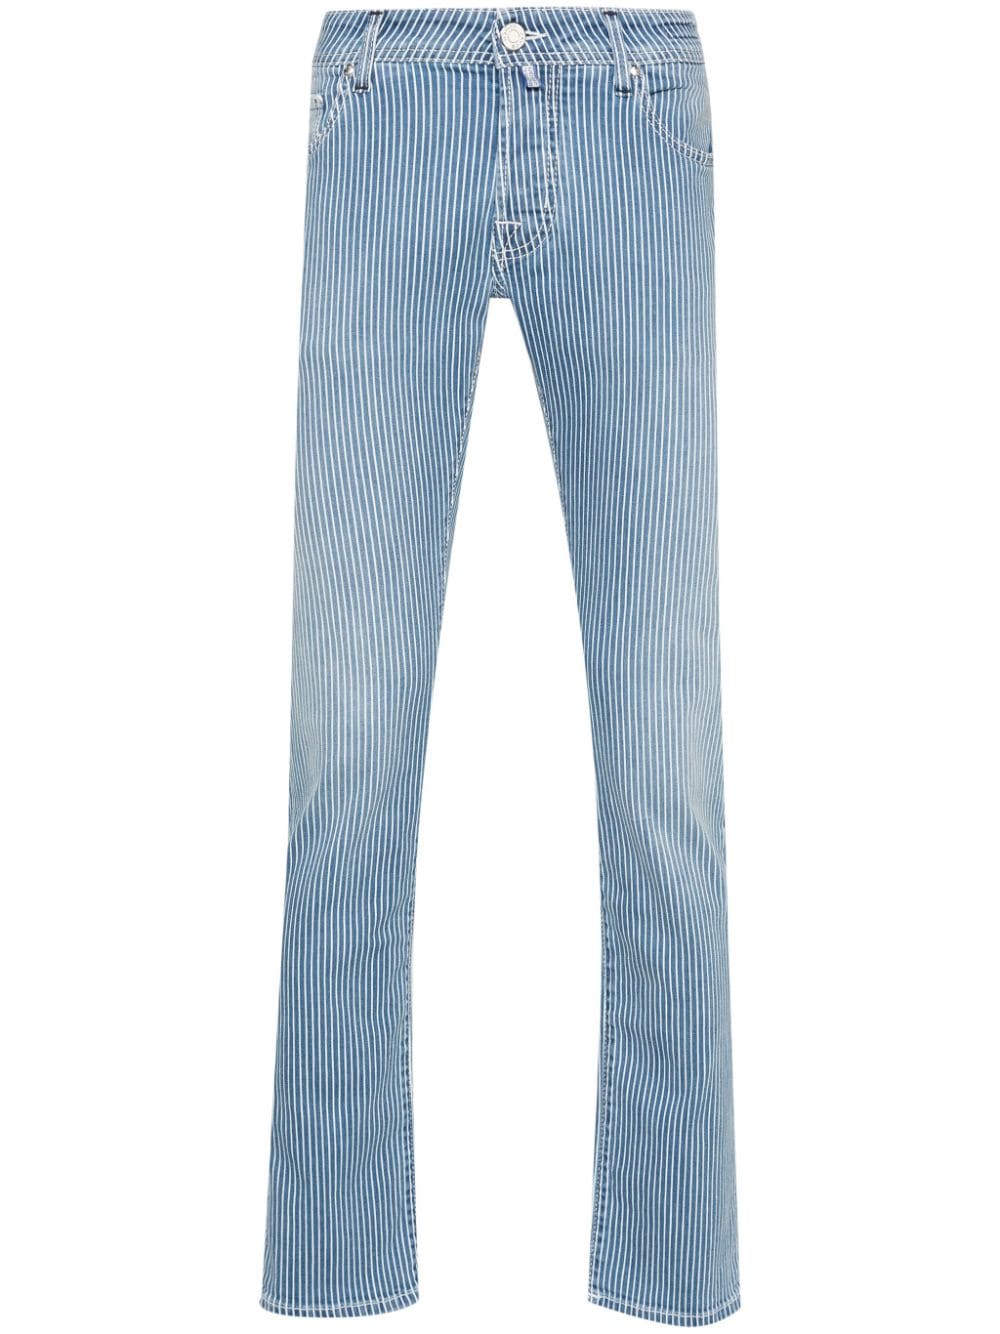 Jacob Cohën Nick striped jeans - Blue von Jacob Cohën